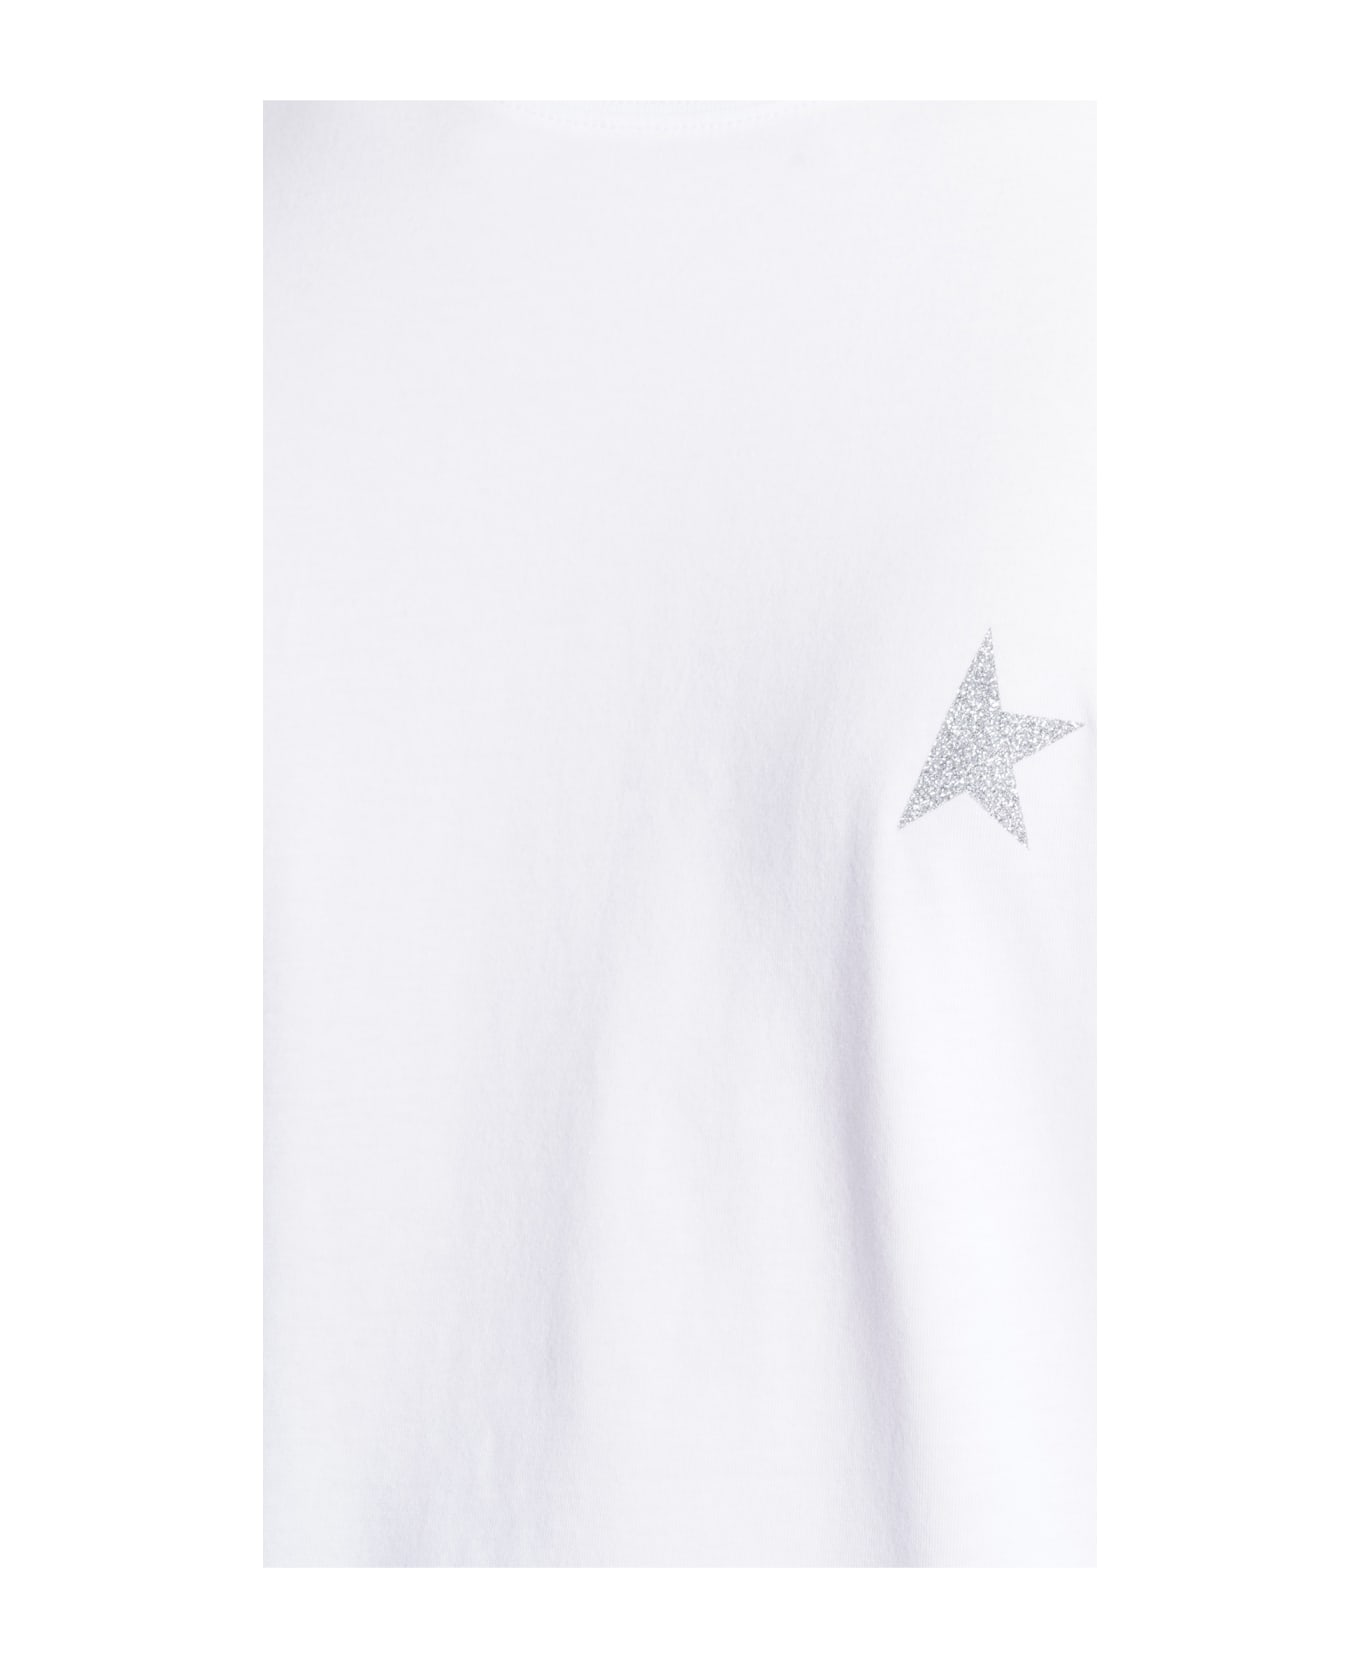 Golden Goose Star T-shirt - White